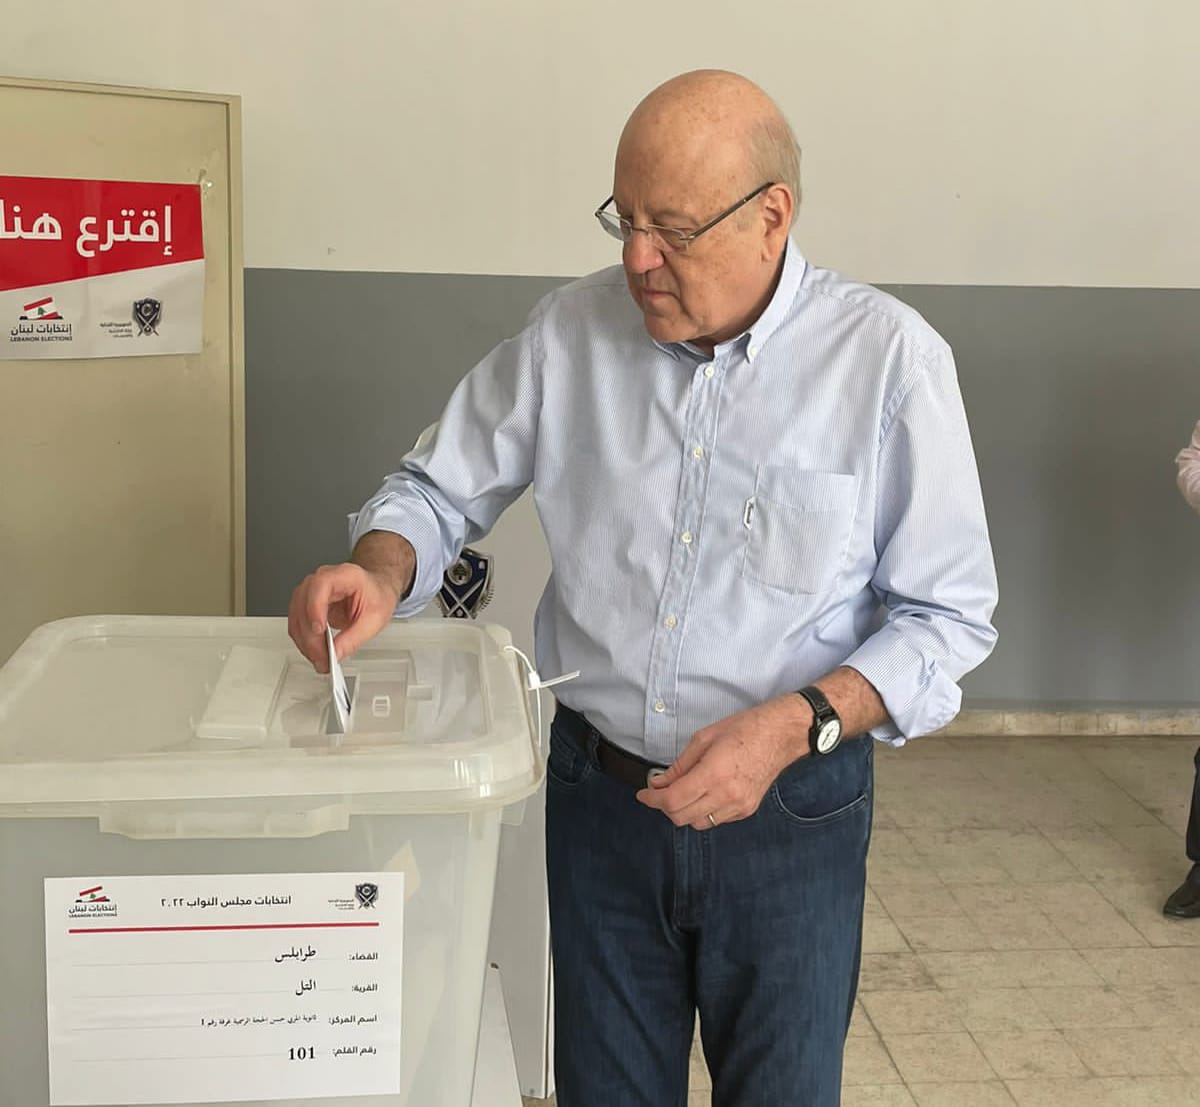 رئيس الوزراء اللبناني نجيب ميقاتي يدلي بصوته في الانتخابات النيابية في مدينة (طرابلس) شمال لبنان